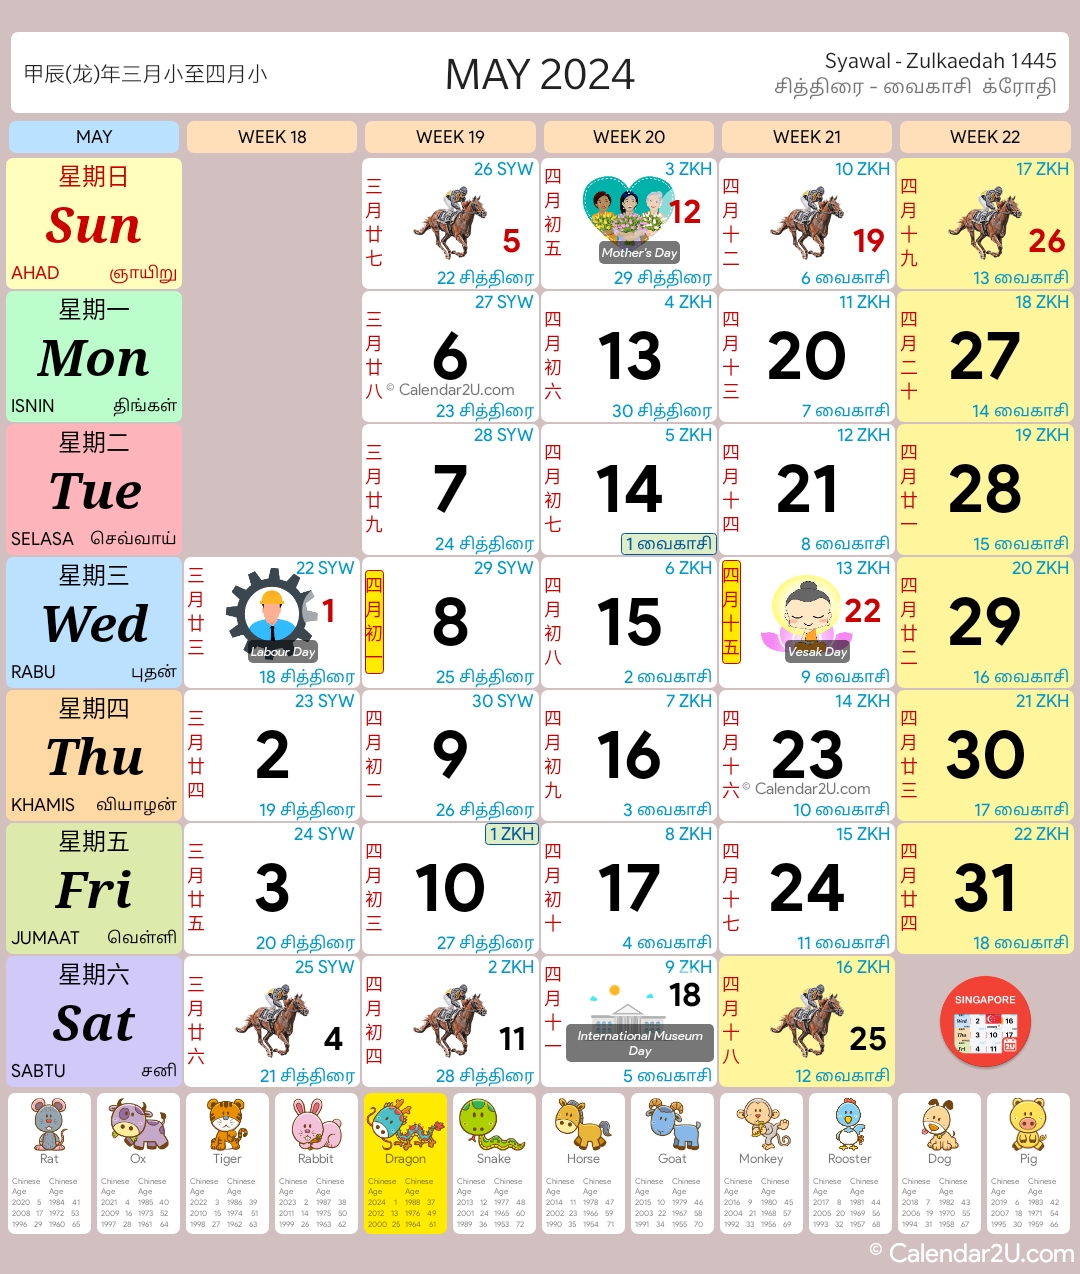 Singapura (Singapore) Calendar